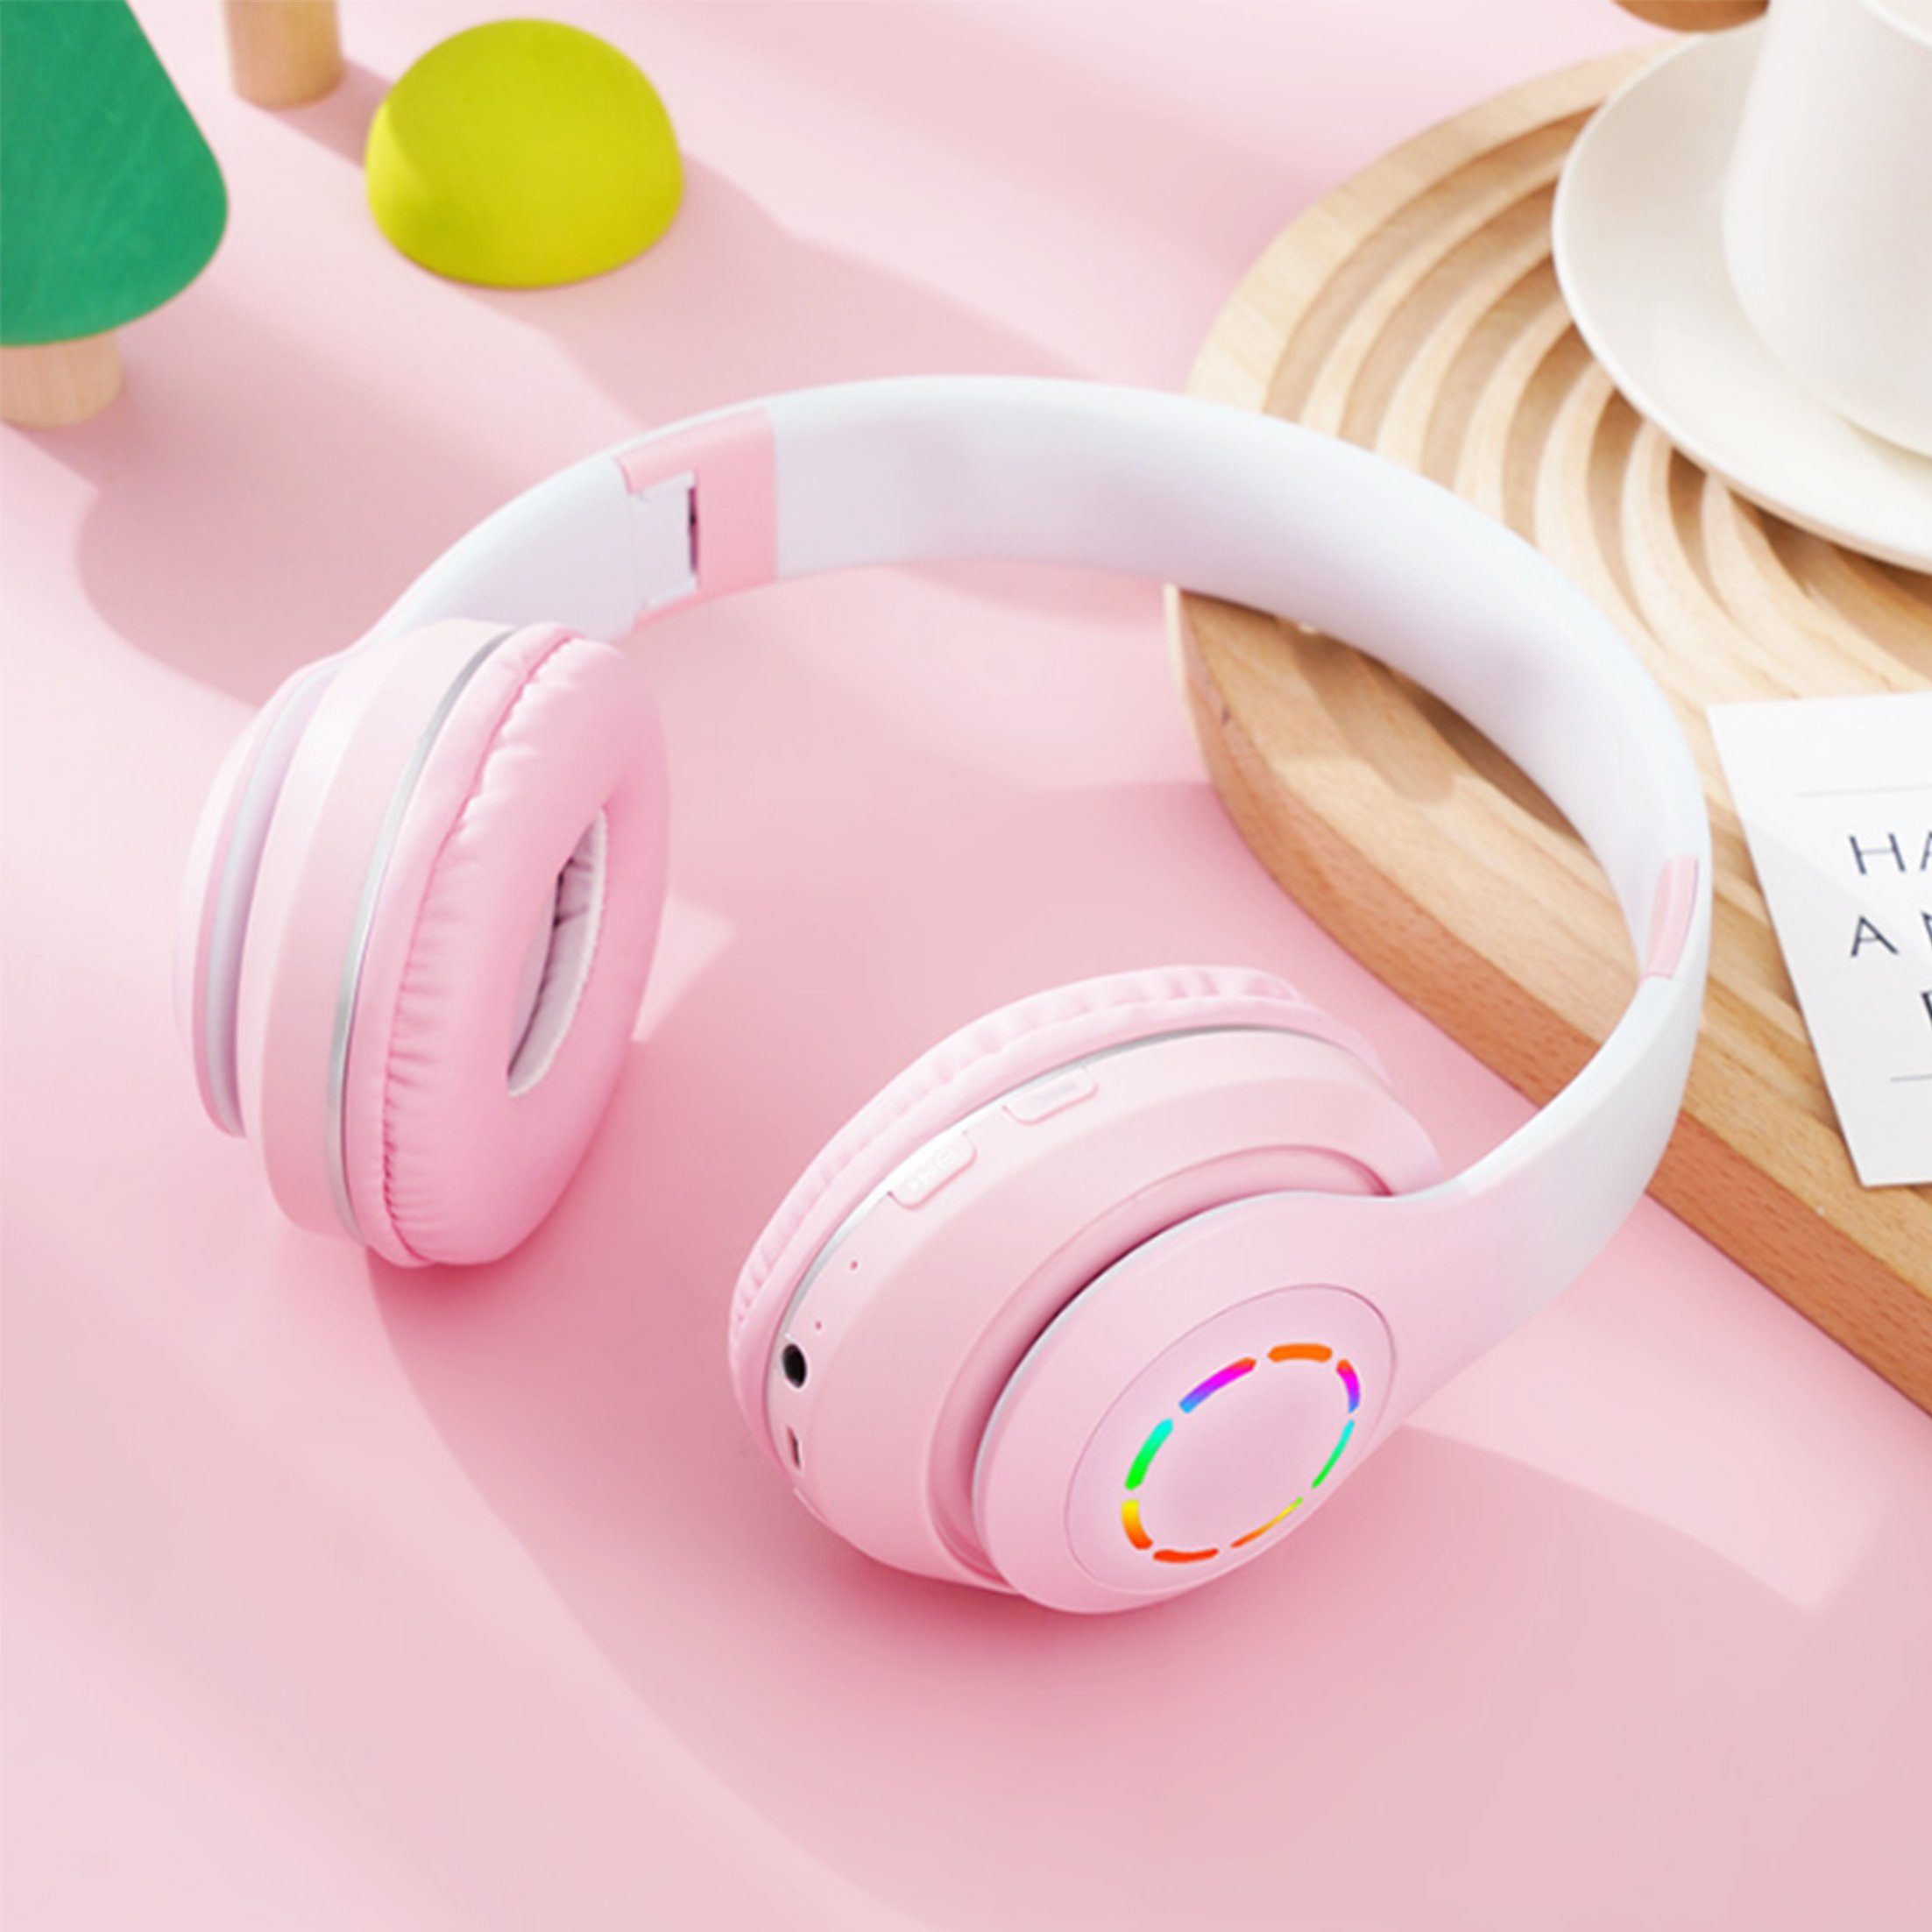 Diida Kopfhörer,Bluetooth-Kopfhörer,Over Ear Kabelloses Headset Funk-Kopfhörer Farbverlauf Rosa